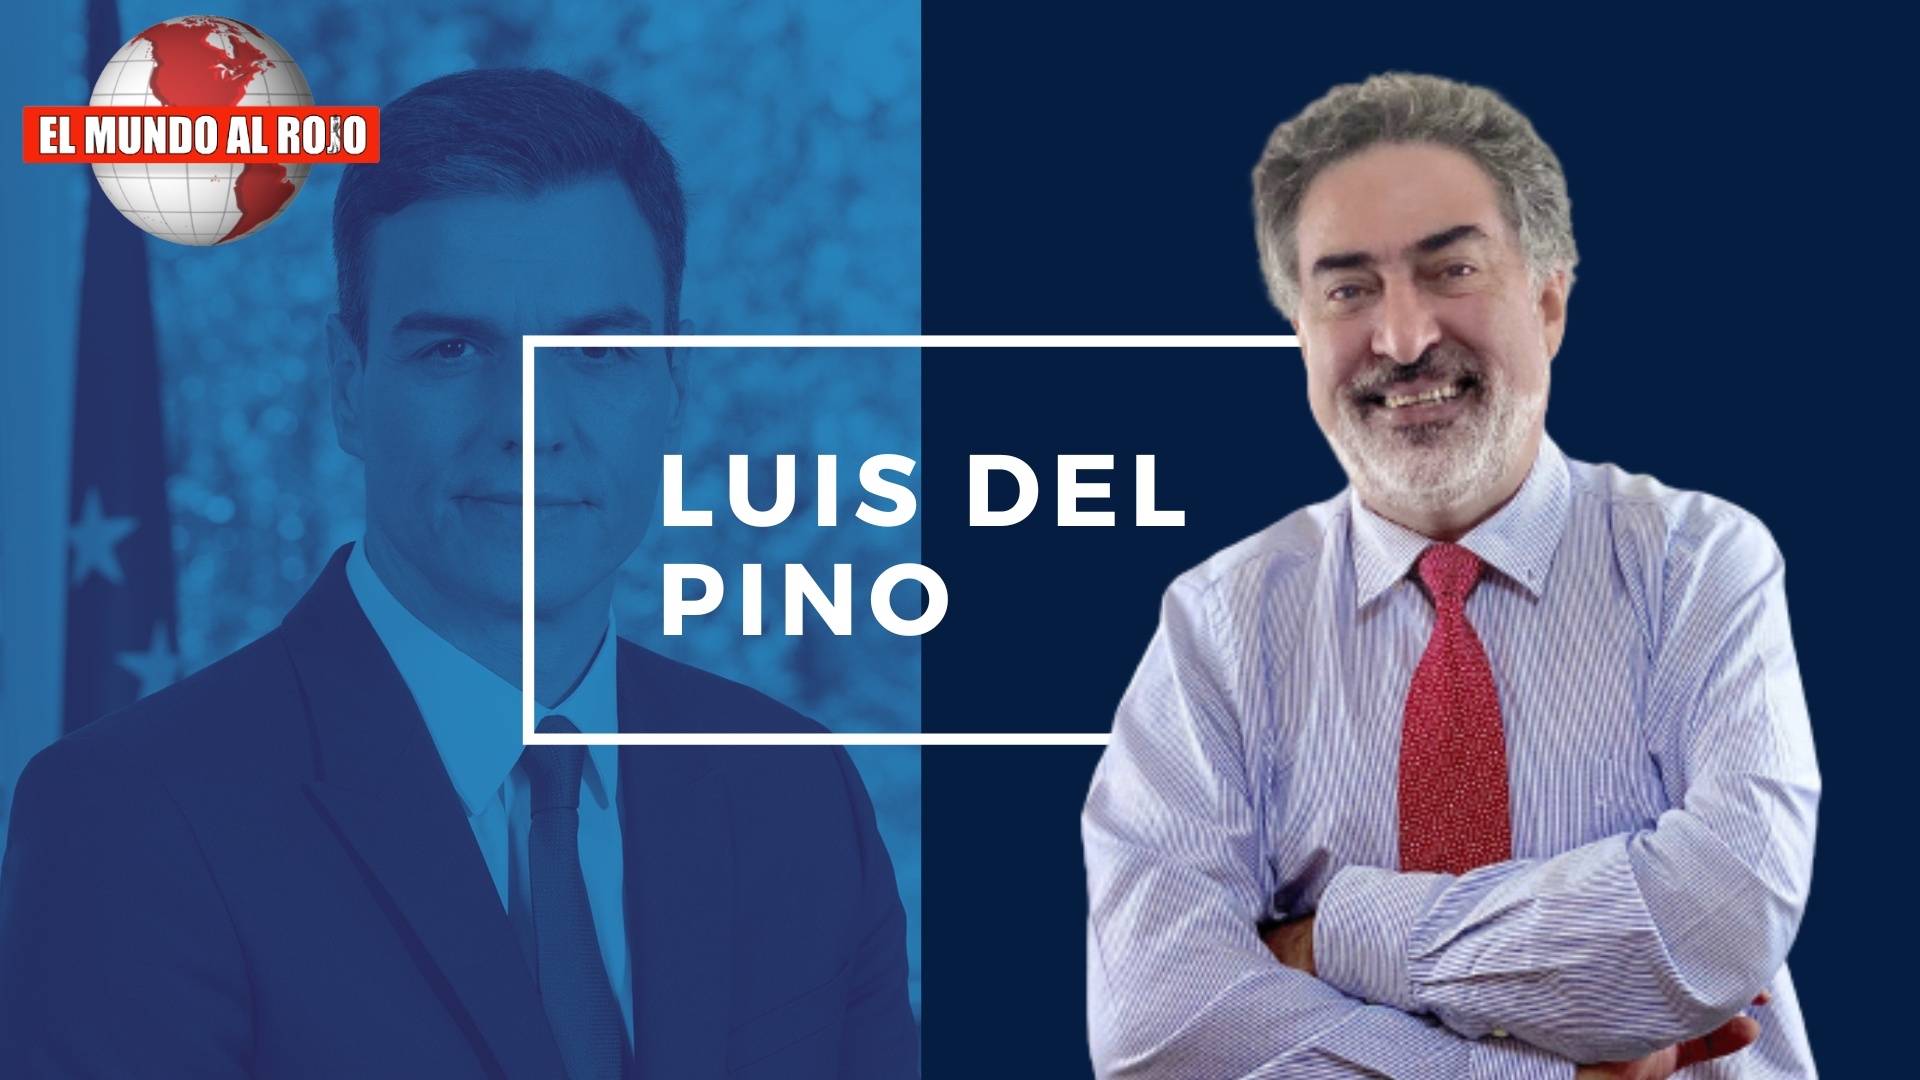 LUIS DEL PINO: SÁNCHEZ TRASQUILADO, SE SUMA A LA CAMPAÑA QUE PIDE A LOS MERCADOS ALEMANES NO VENDER FRESA ESPAÑOLA